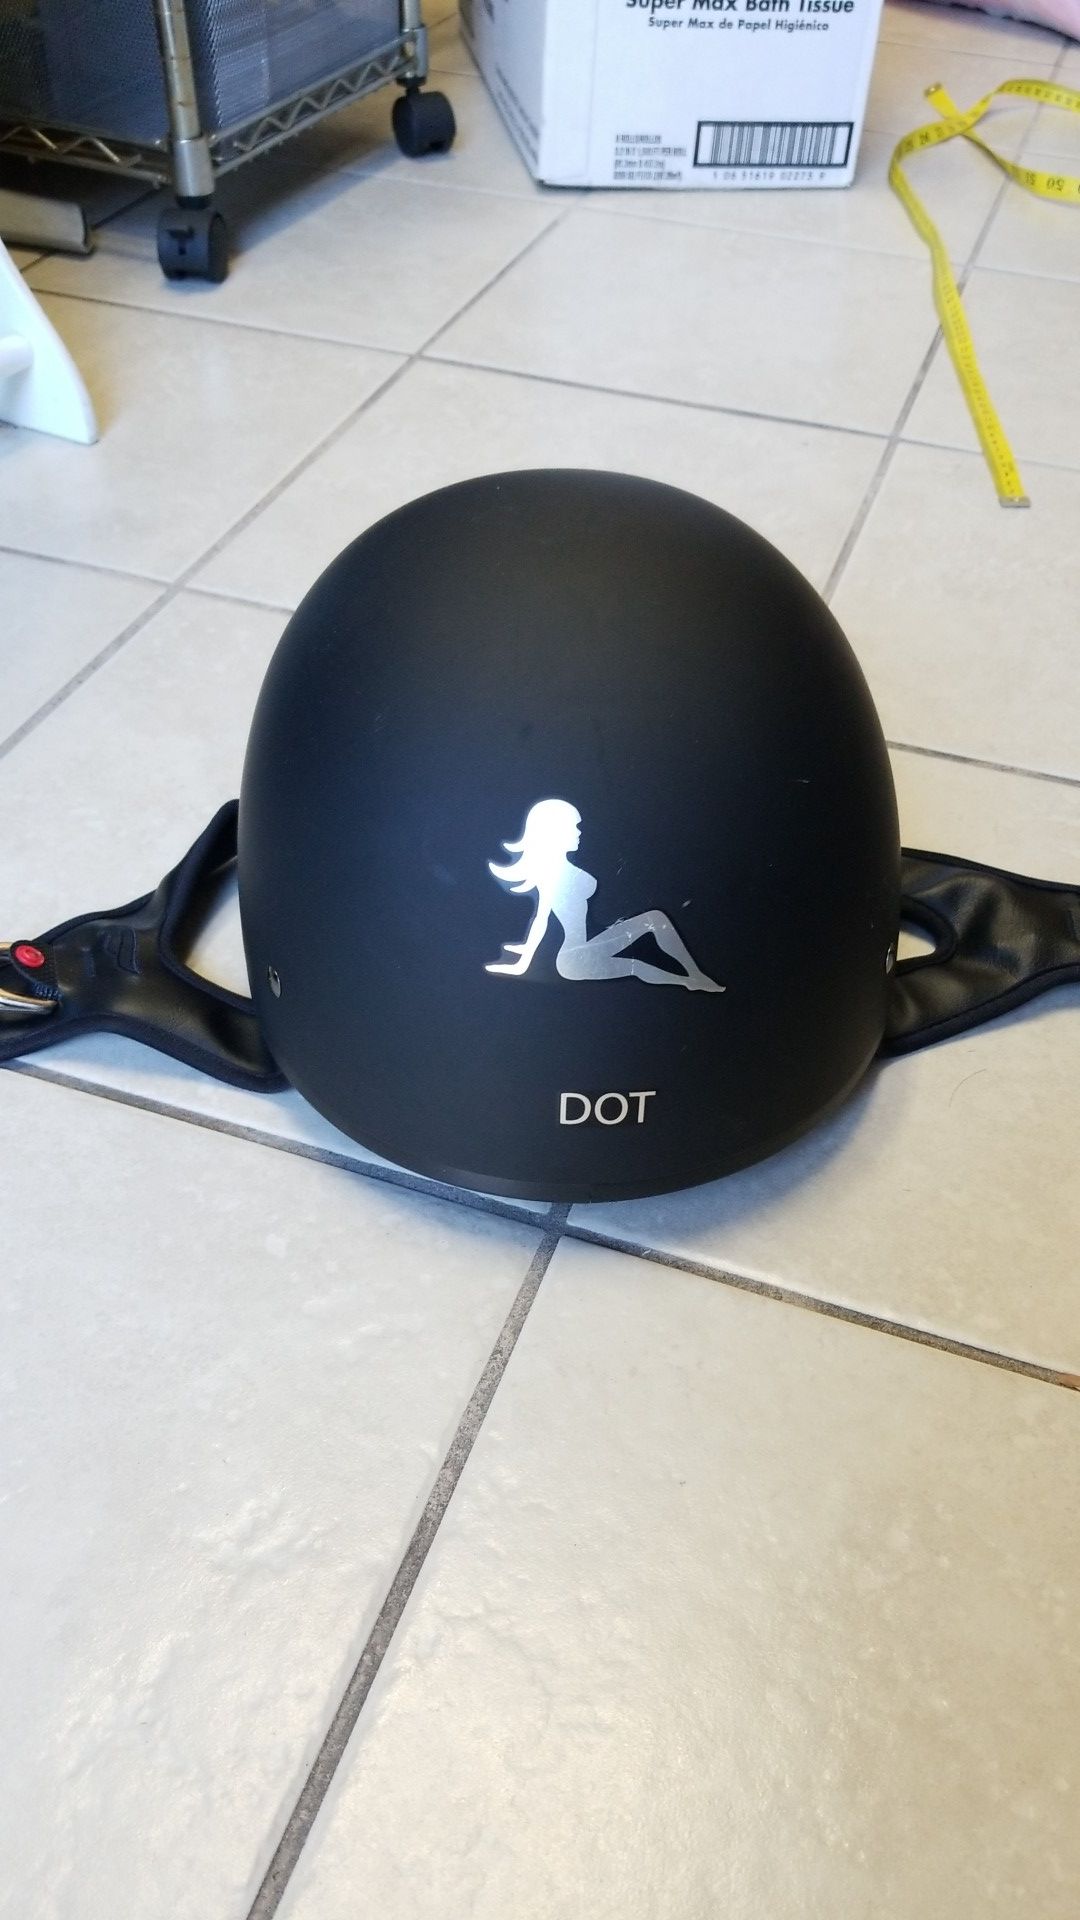 Dot helmet